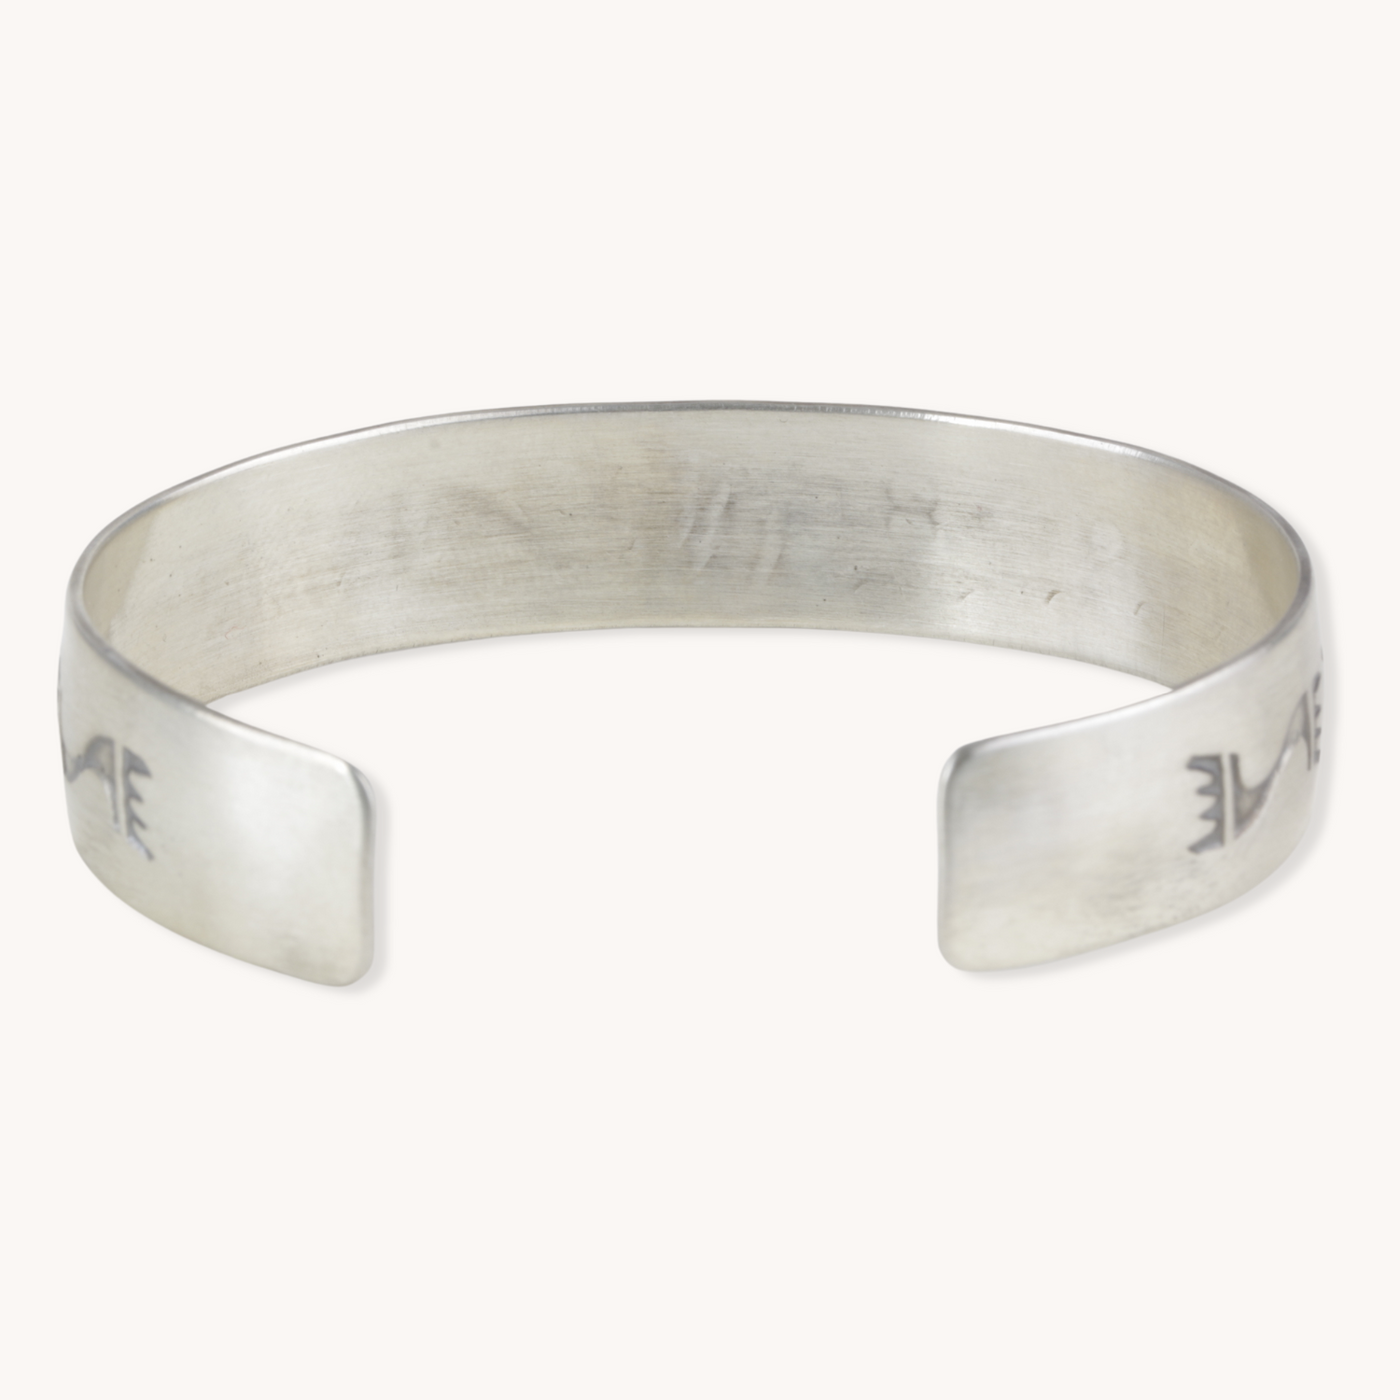 Sterling Silver Cuff Bracelet by TSkies